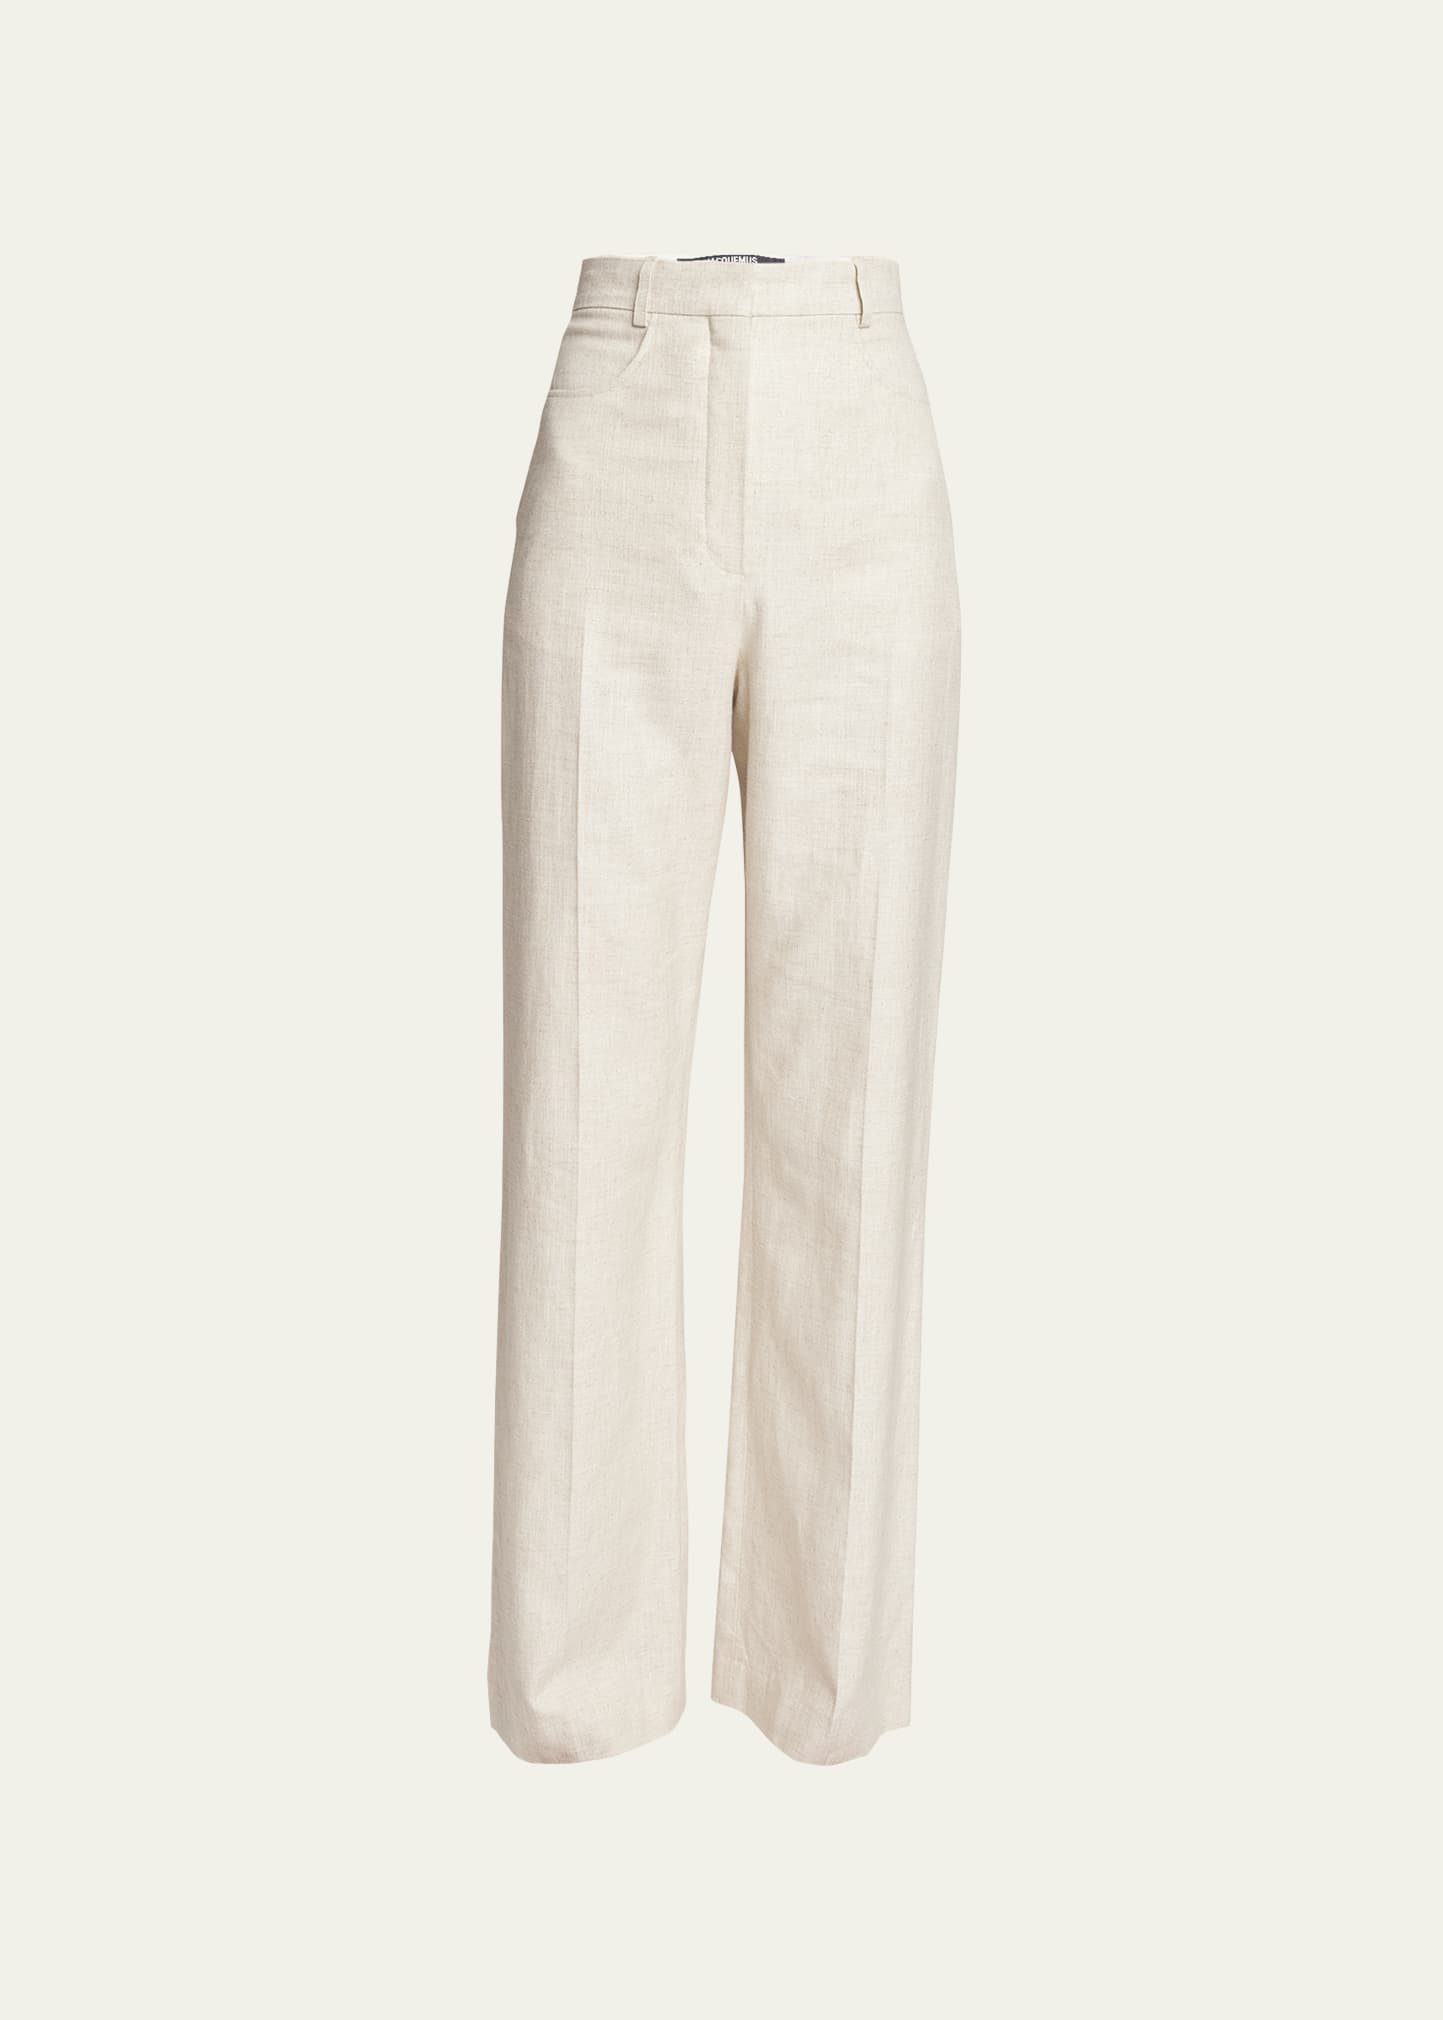 Jacquemus Le Pantalon Sauge Linen Trousers | Bergdorf Goodman